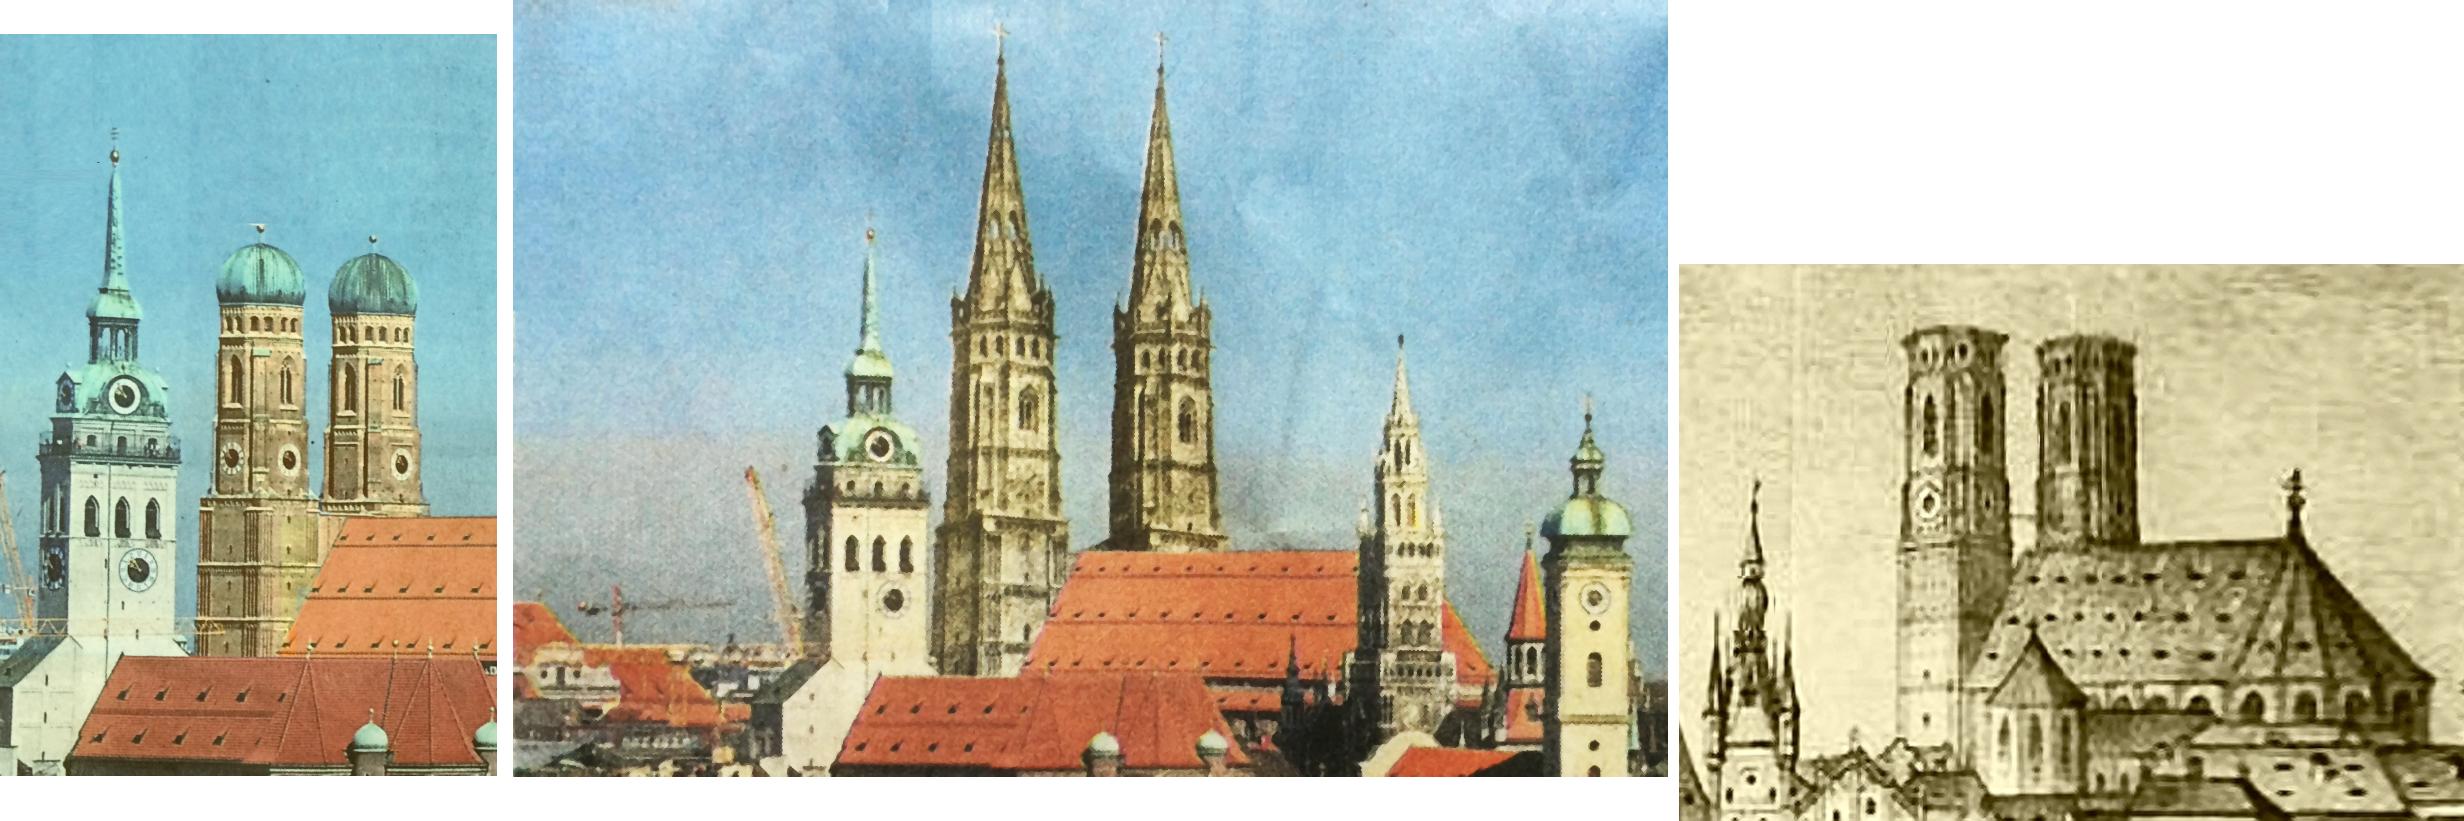 Turmhauben Frauenkirche heute, ursprünglicher Entwurf sowie nach Fertigsstellung um 1490